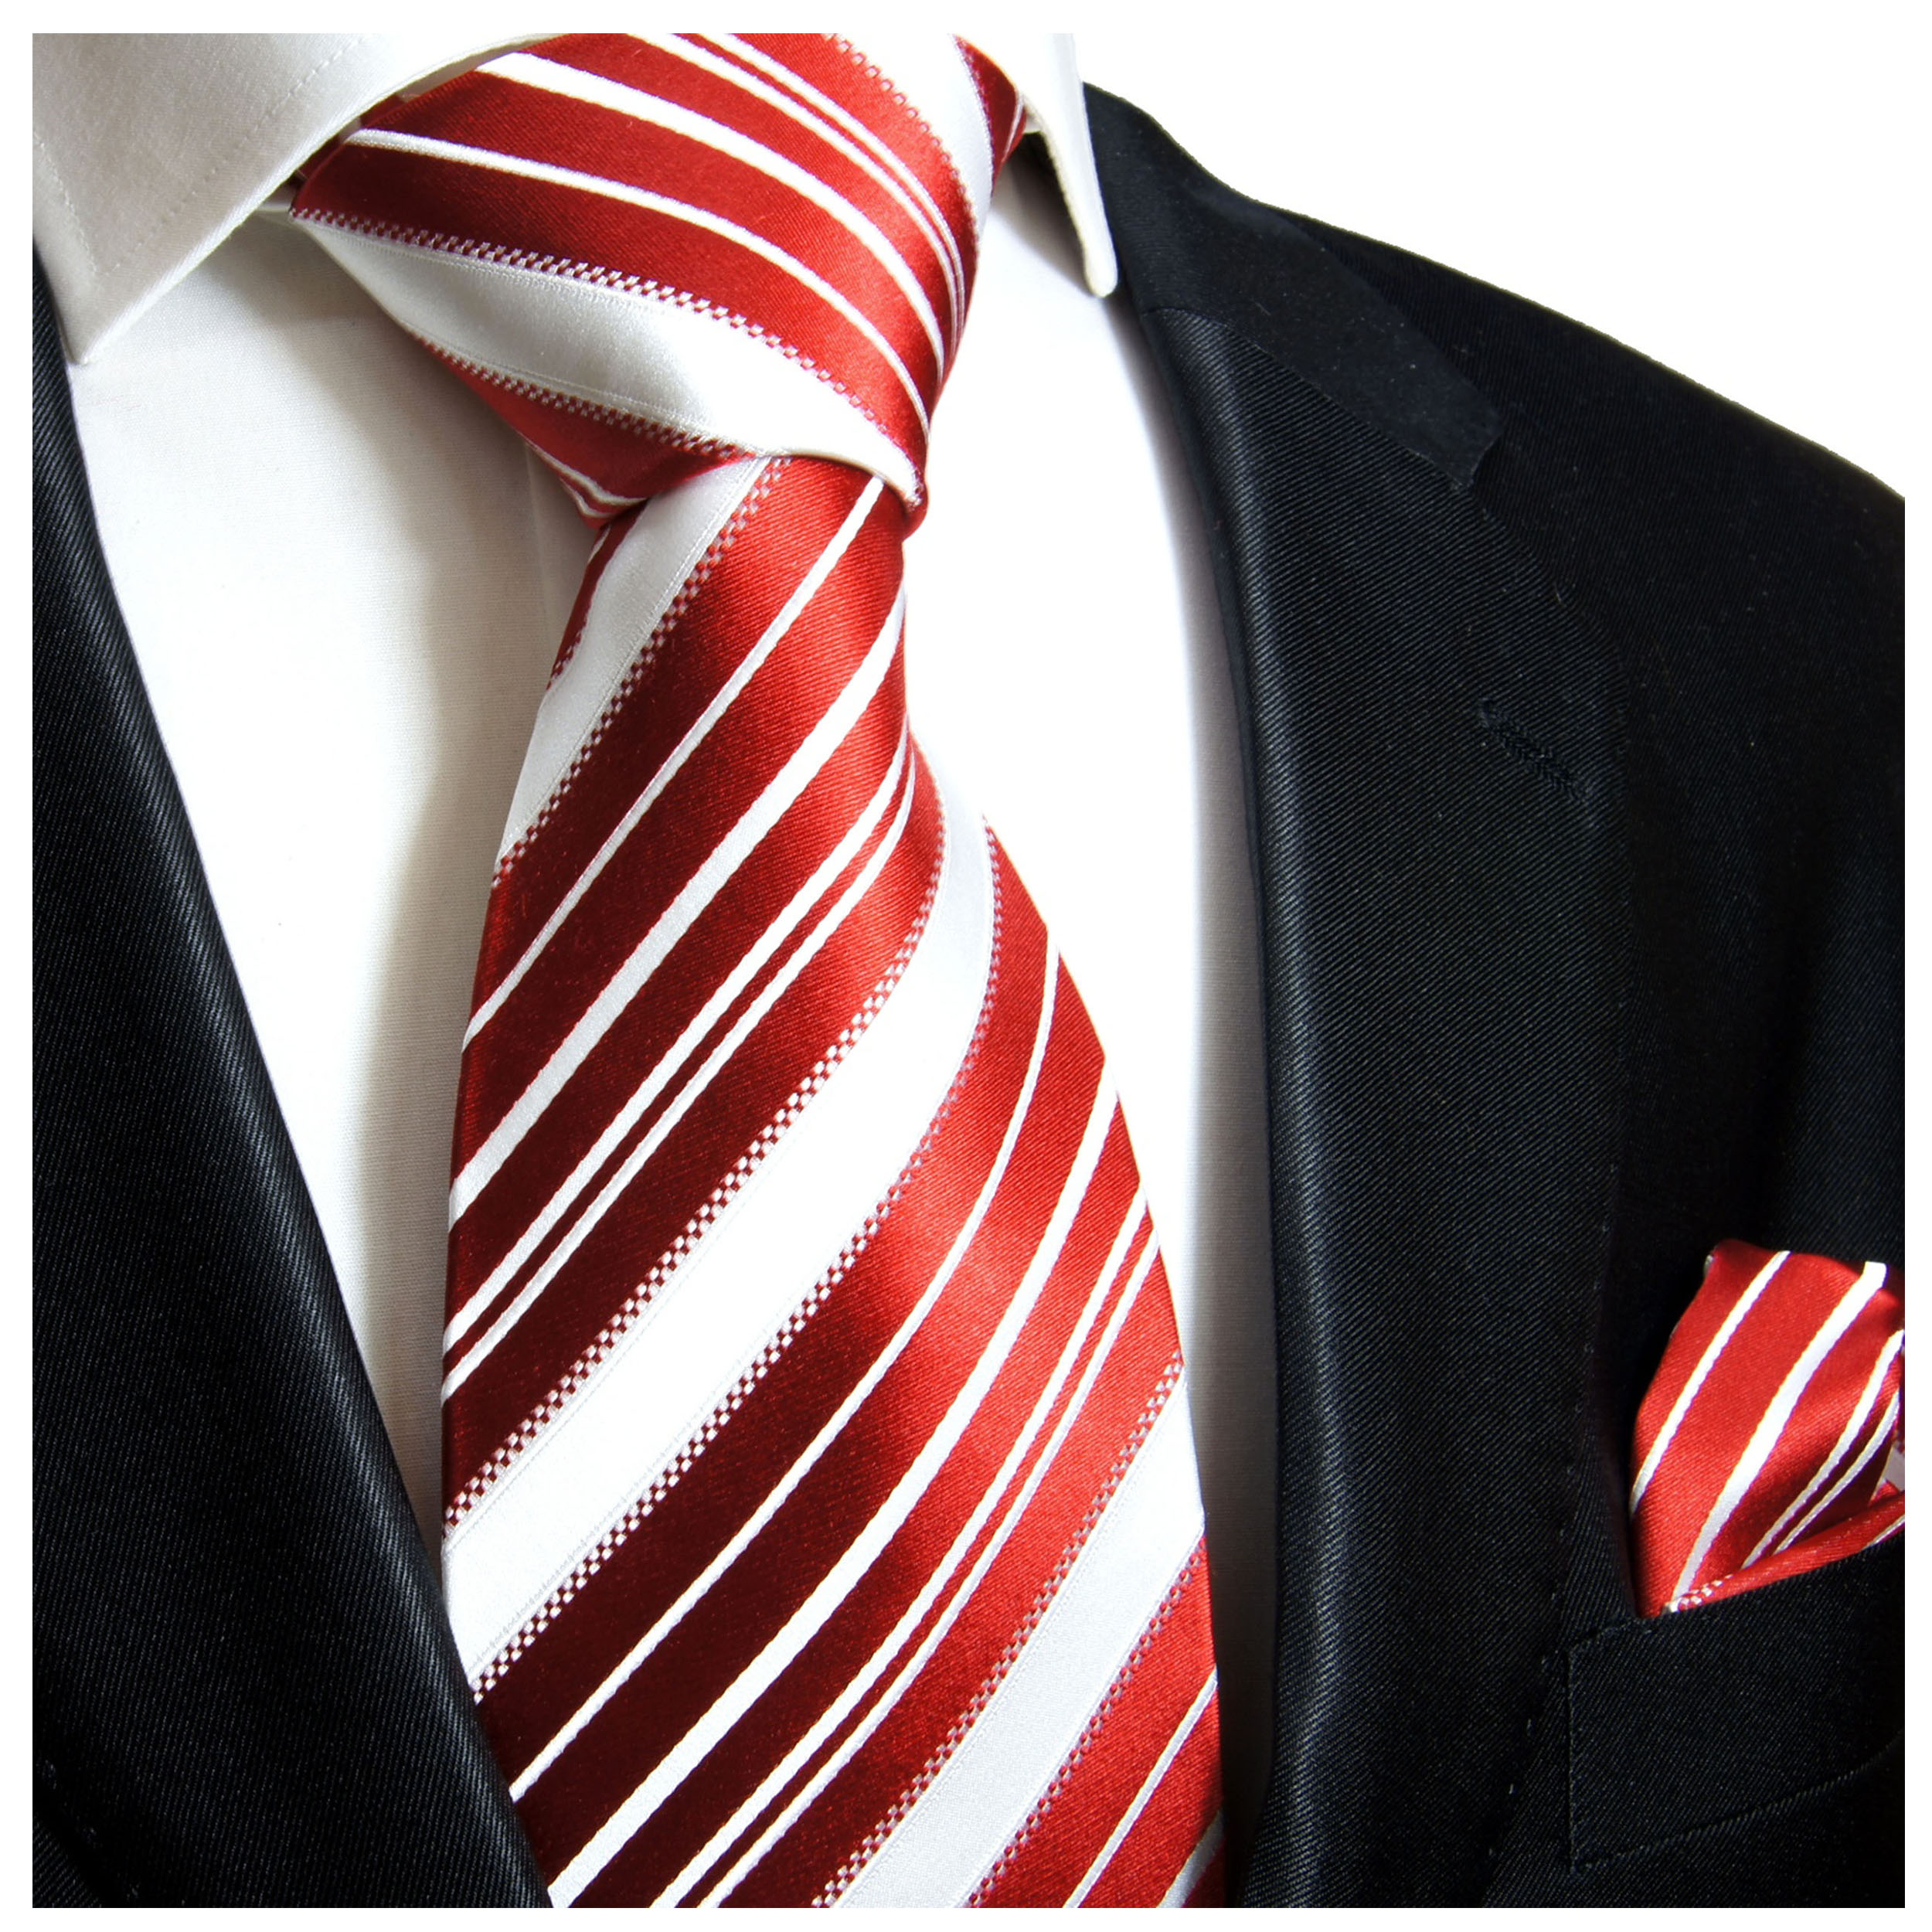 Krawatte rot | Shop JETZT 445 schwarz Seide BESTELLEN Malone - Paul